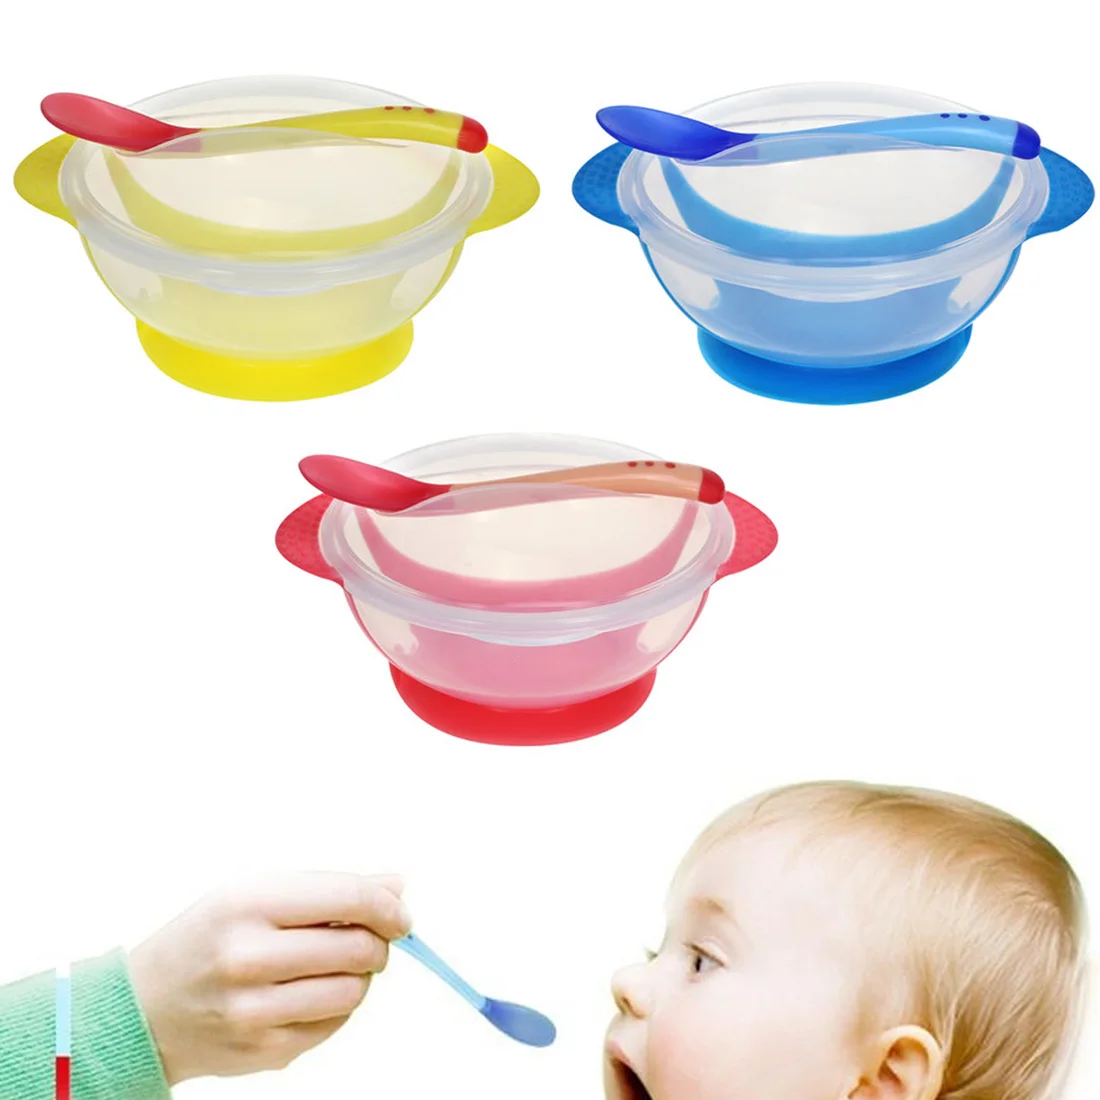 Температура зондирования кормления ложка детская посуда миска для еды обучающая посуда служебная табличка/поднос присоска детские